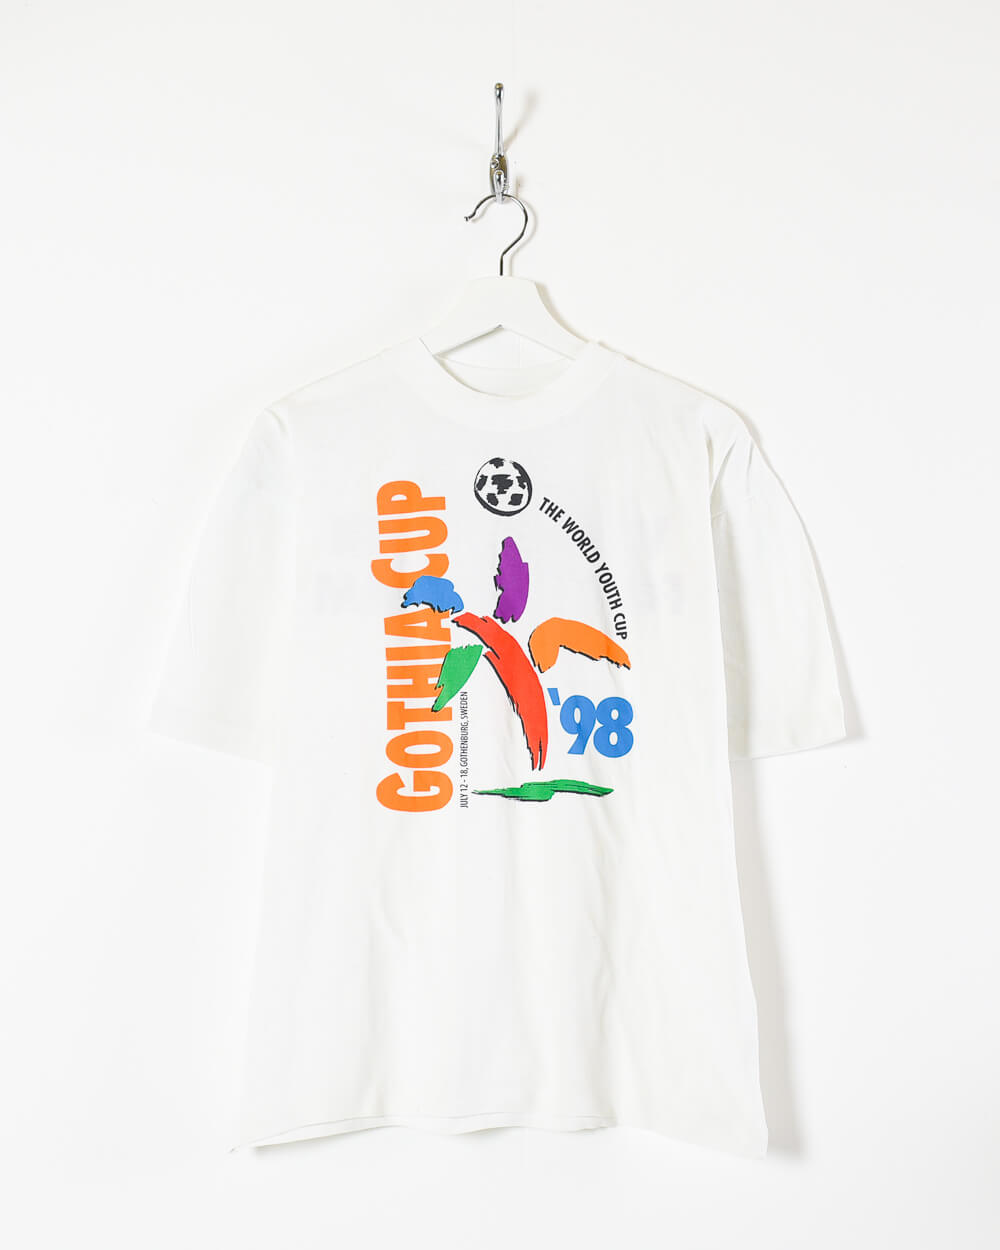 White Reebok Gotha Cup 98 T-Shirt - Small